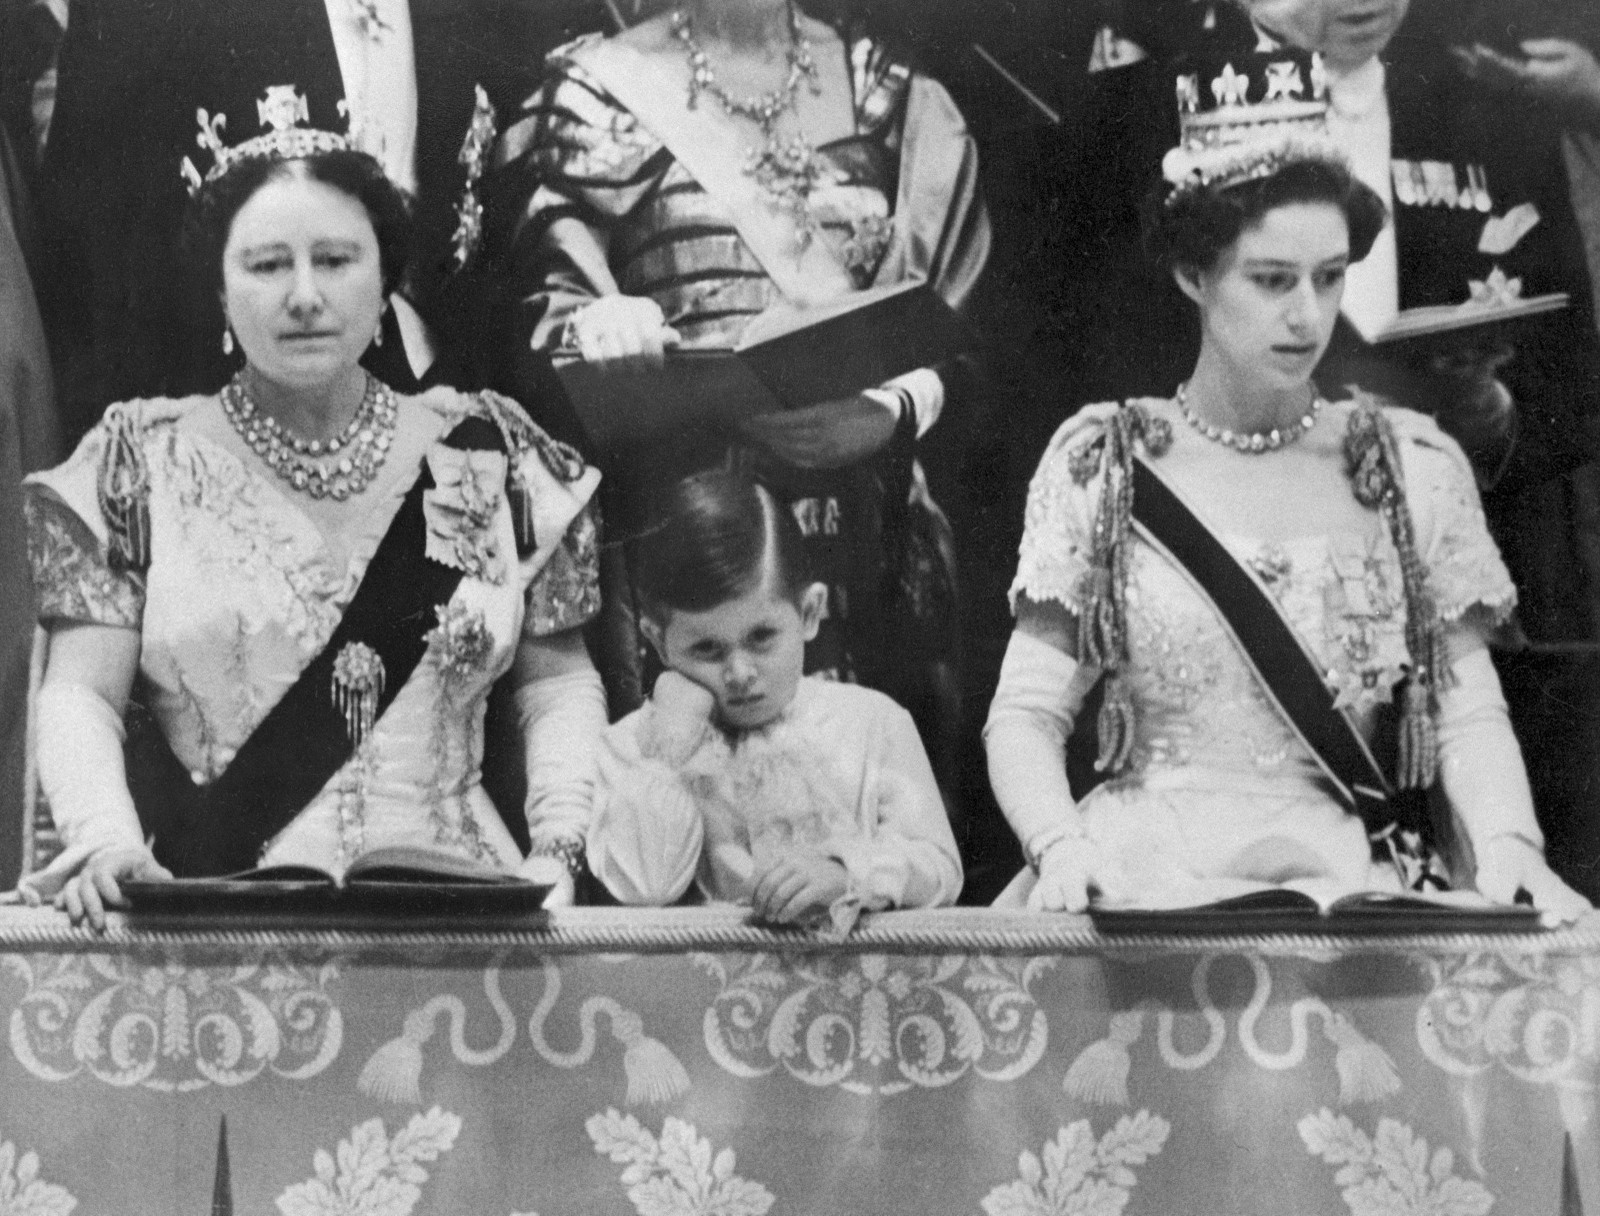 A rainha Elizabeth, o príncipe Charles e a princesa Margaret participam da cerimônia de coroação da rainha Elizabeth II, na Abadia de Westminster, em Londres, em 2 de junho de 1953 — Foto: INTERCONTINENTALE / AFP